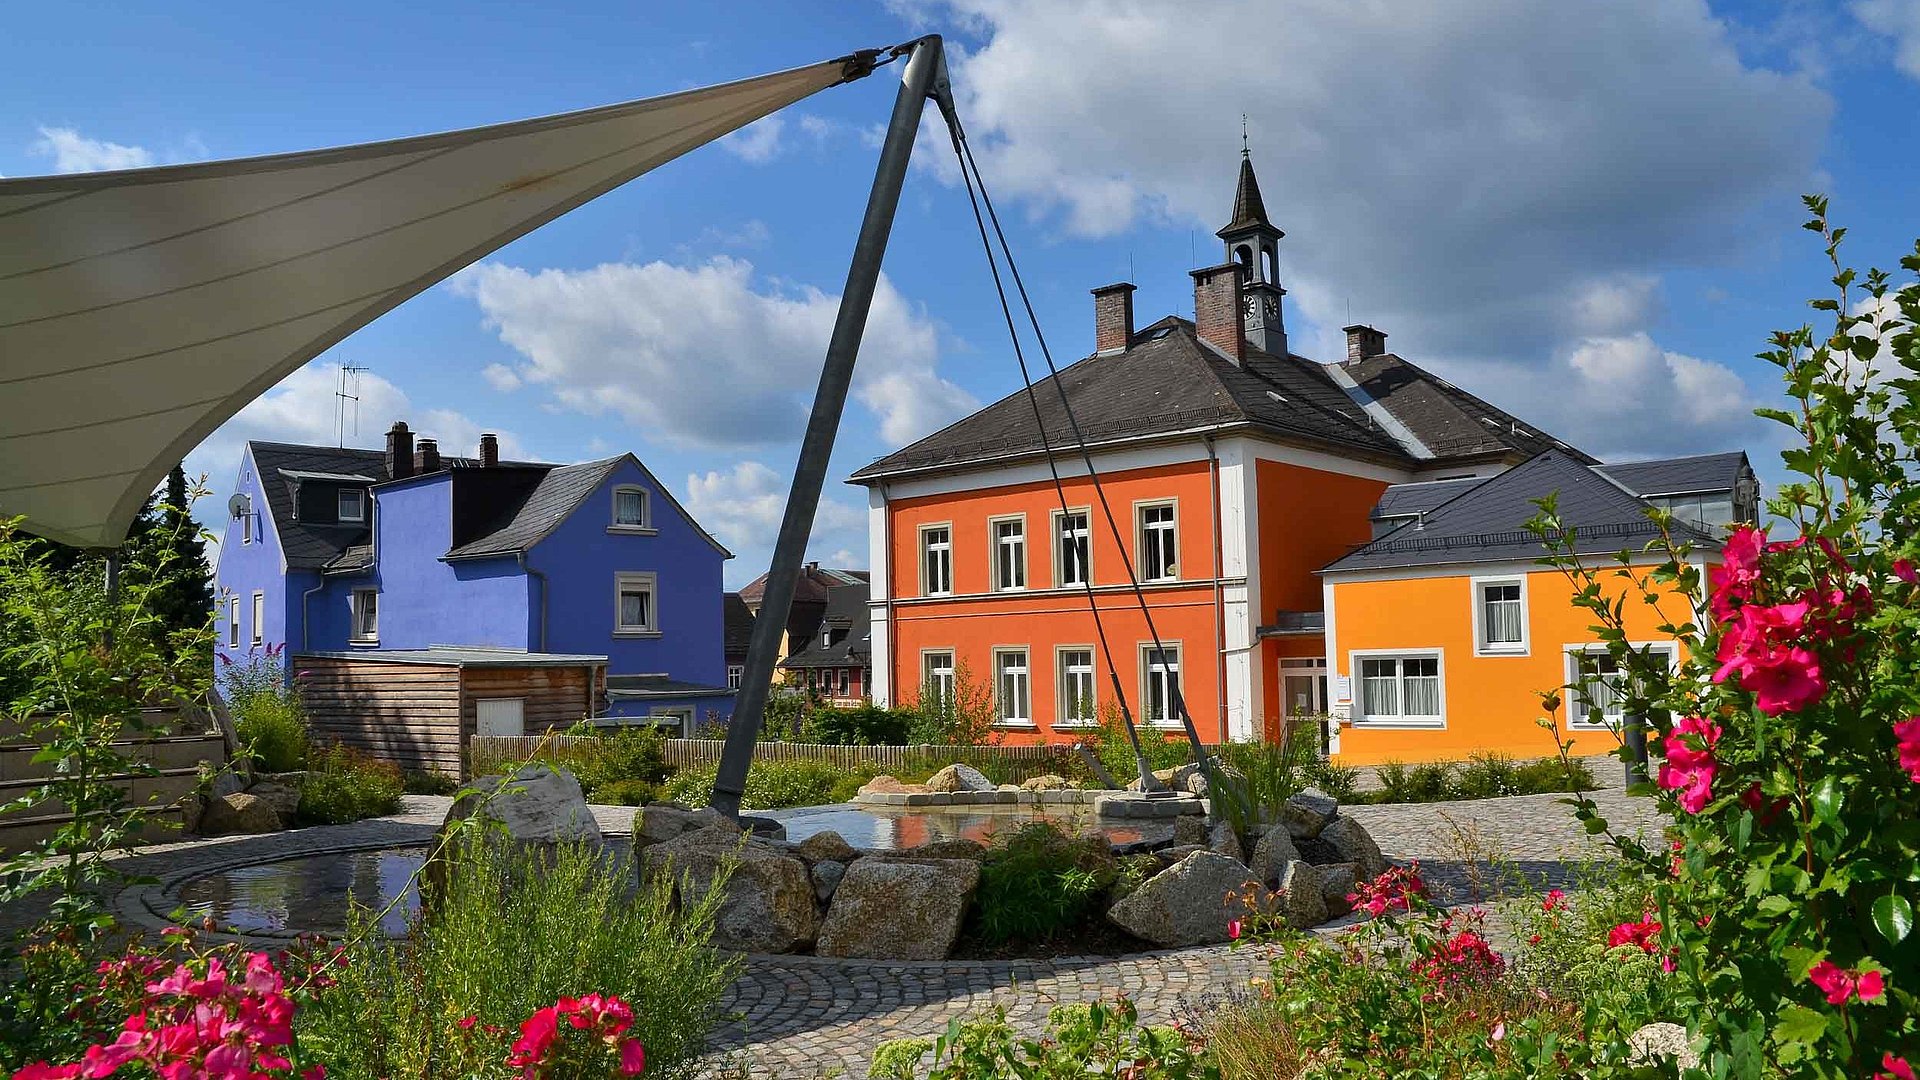 Pauschalangebote für Unterkünfte zu Feiertagen im Fichtelgebirge - Ortsmitte von Röslau bei schönem Wetter, linke Seite mit blauem Haus und rechte Seite ein großes oranges Haus